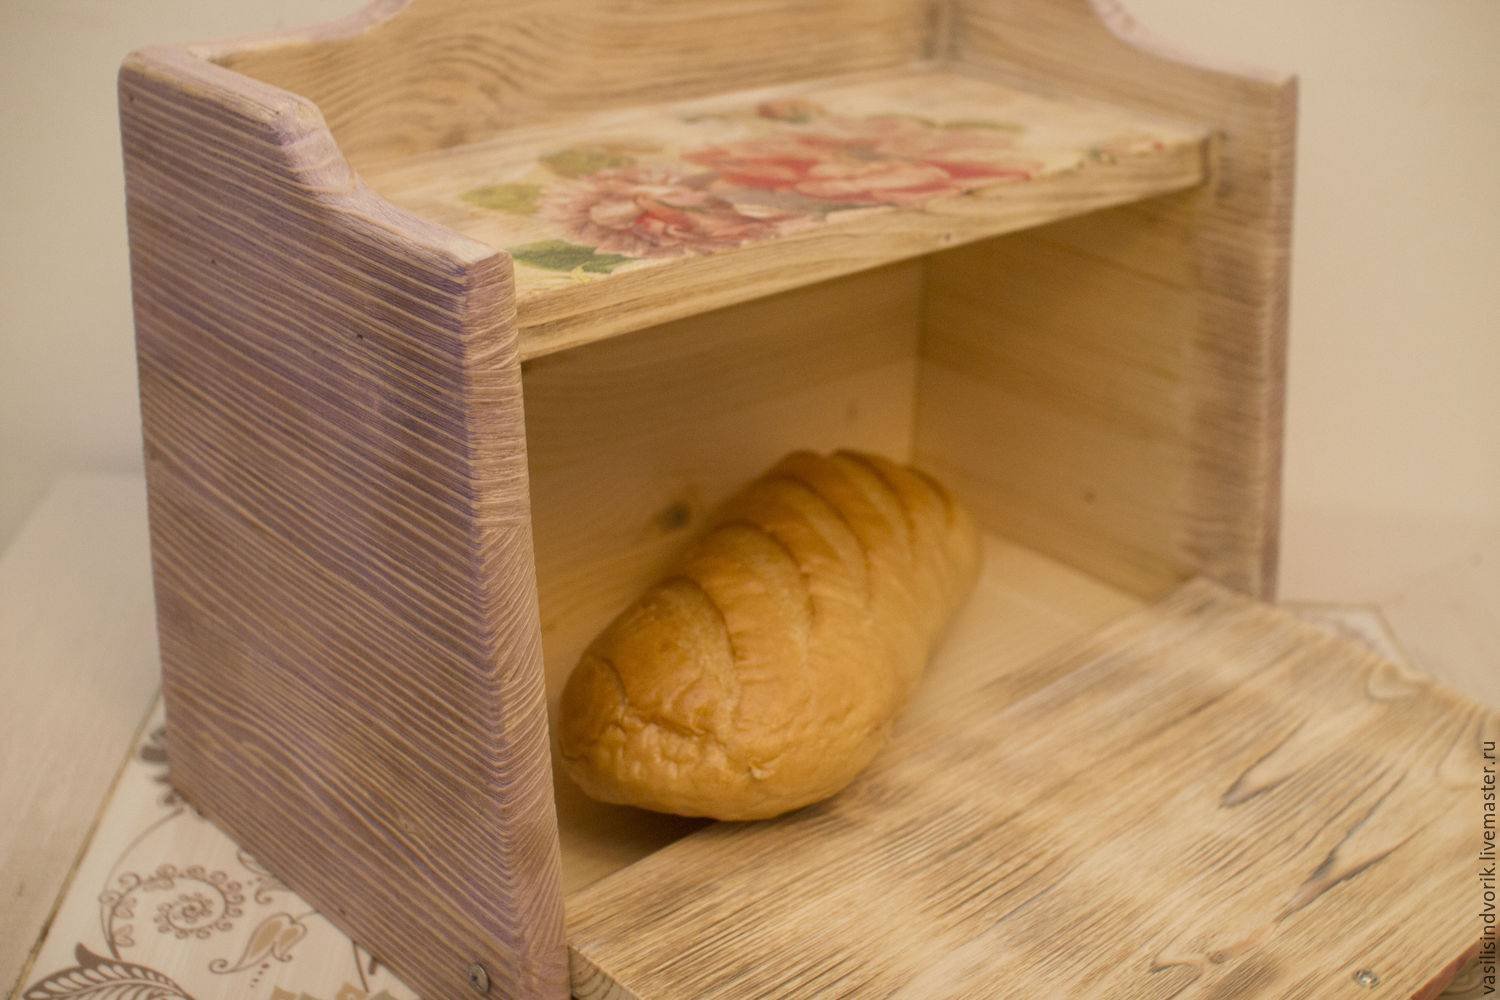 Резные хлебницы из дерева, сделанные своими руками